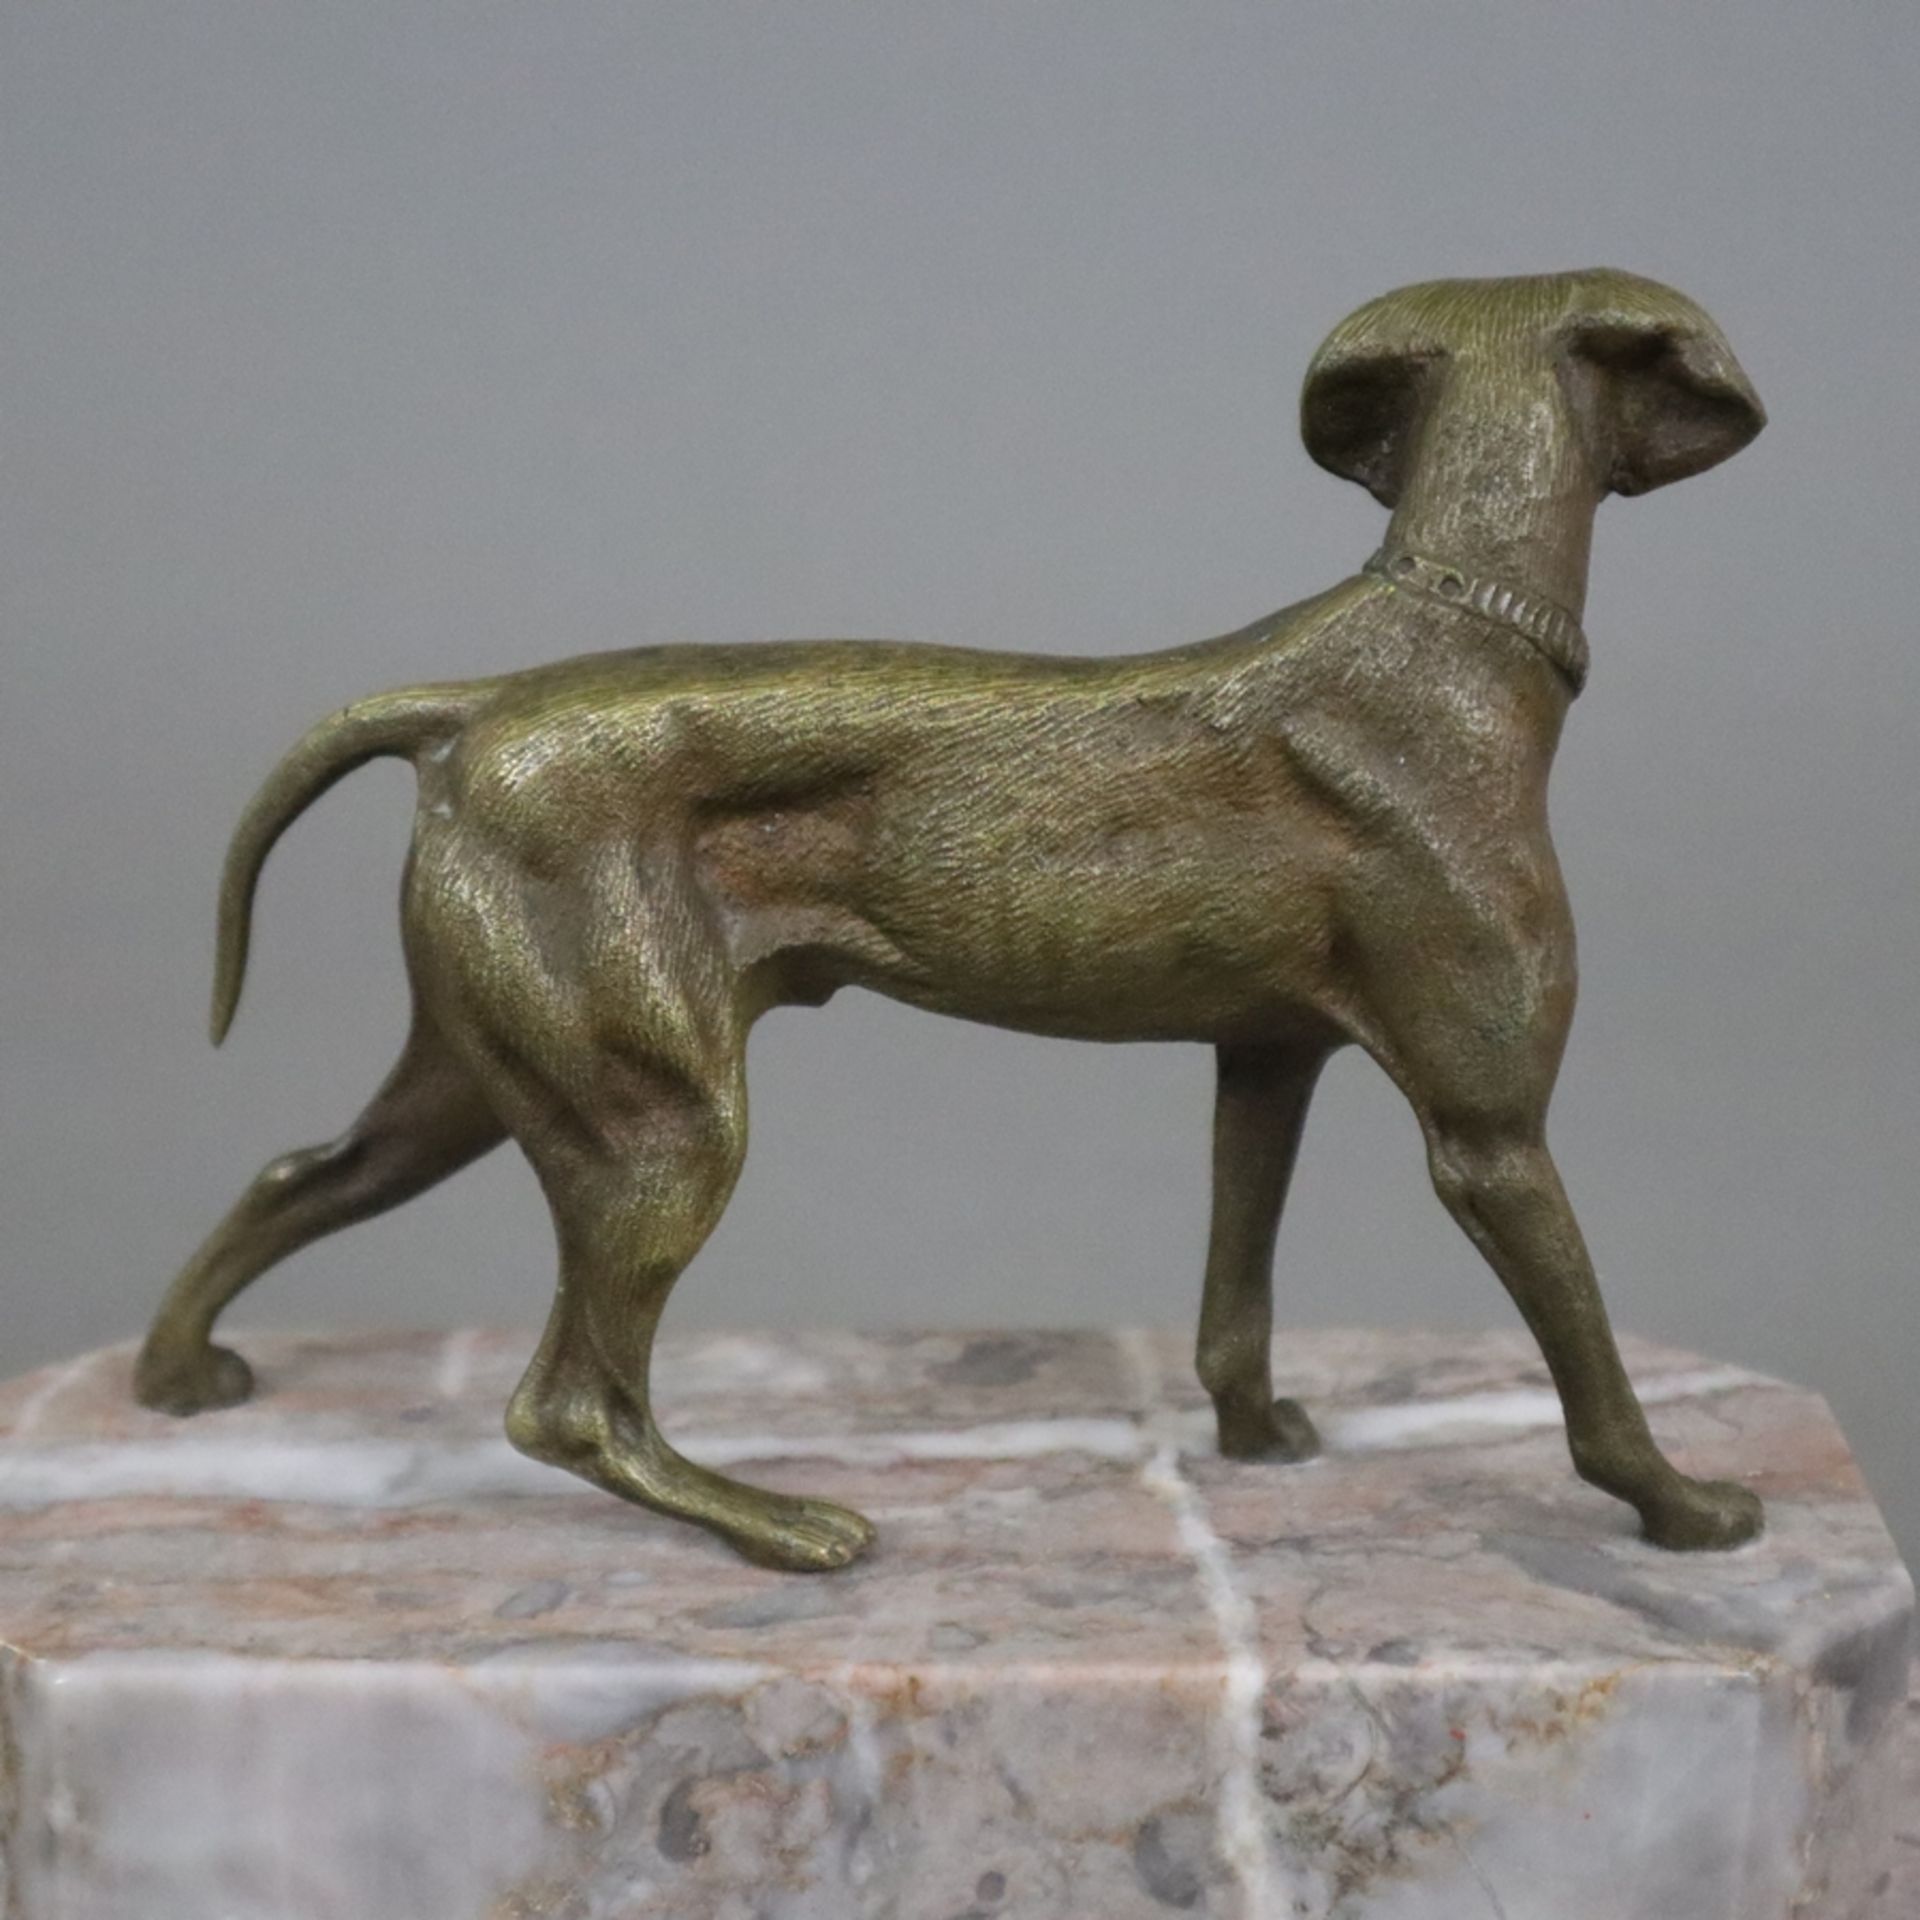 Tierskulptur "Jagdhund" - Bronze, braun patiniert, naturalistische Darstellung in bewegter Pose, na - Bild 5 aus 6